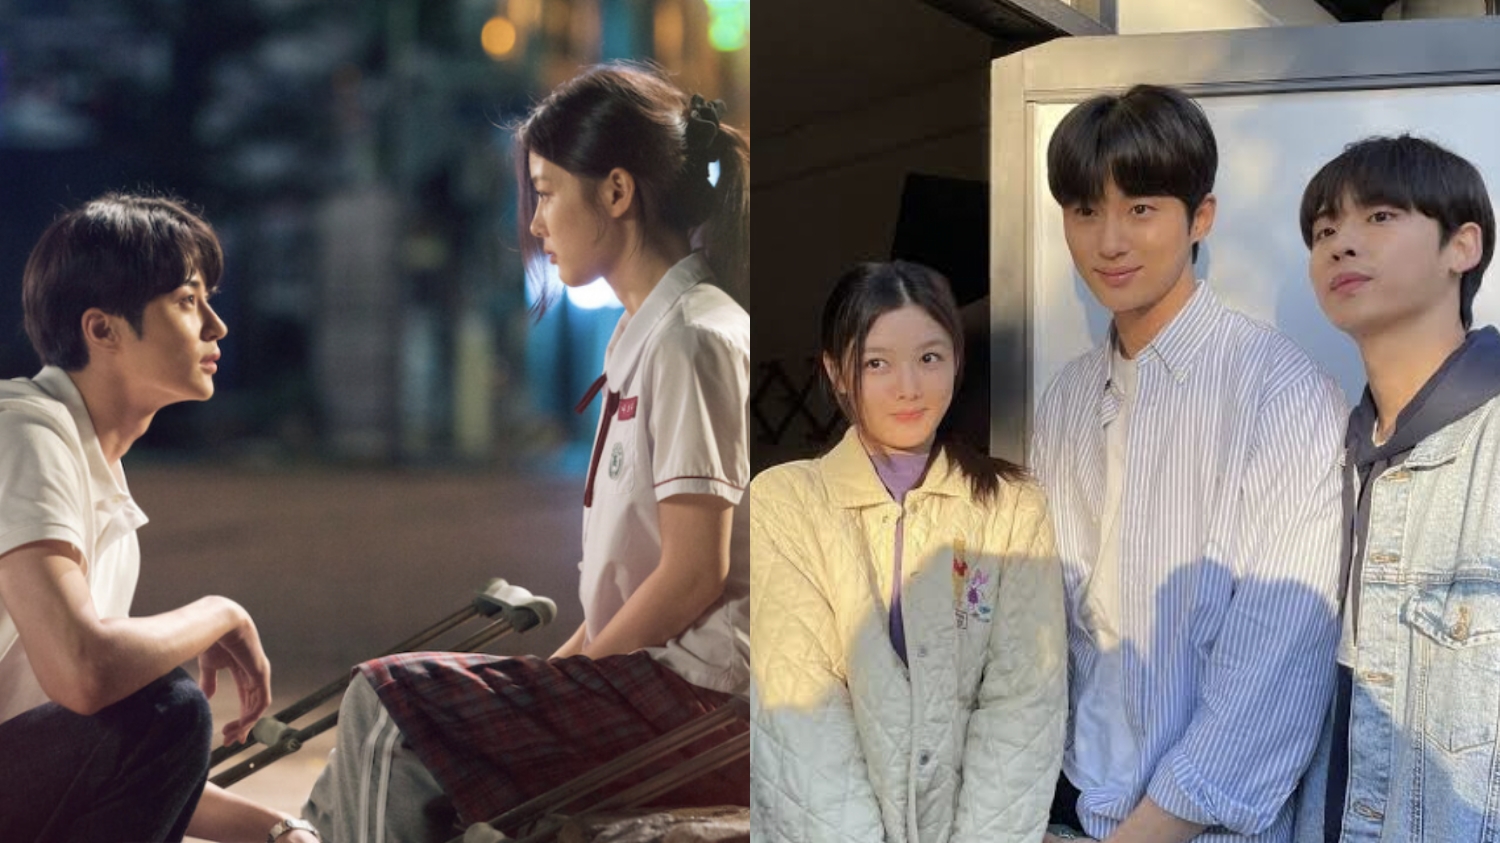 Sinopsis 20th Century Girl, Film Korea tentang Cinta Pertama